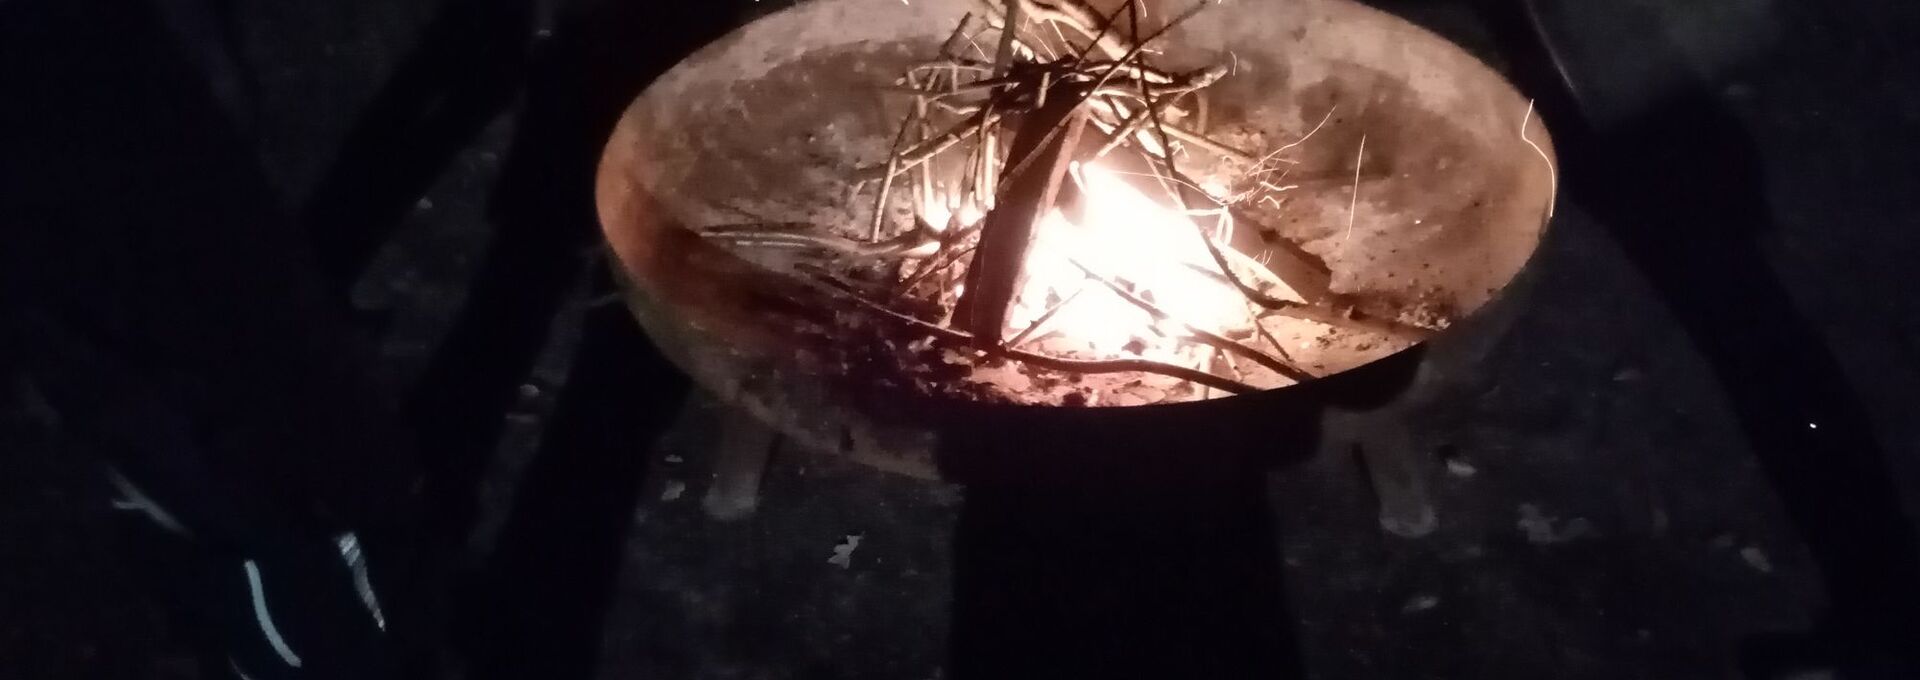 Ein Lagerfeuer brennt in der Nacht